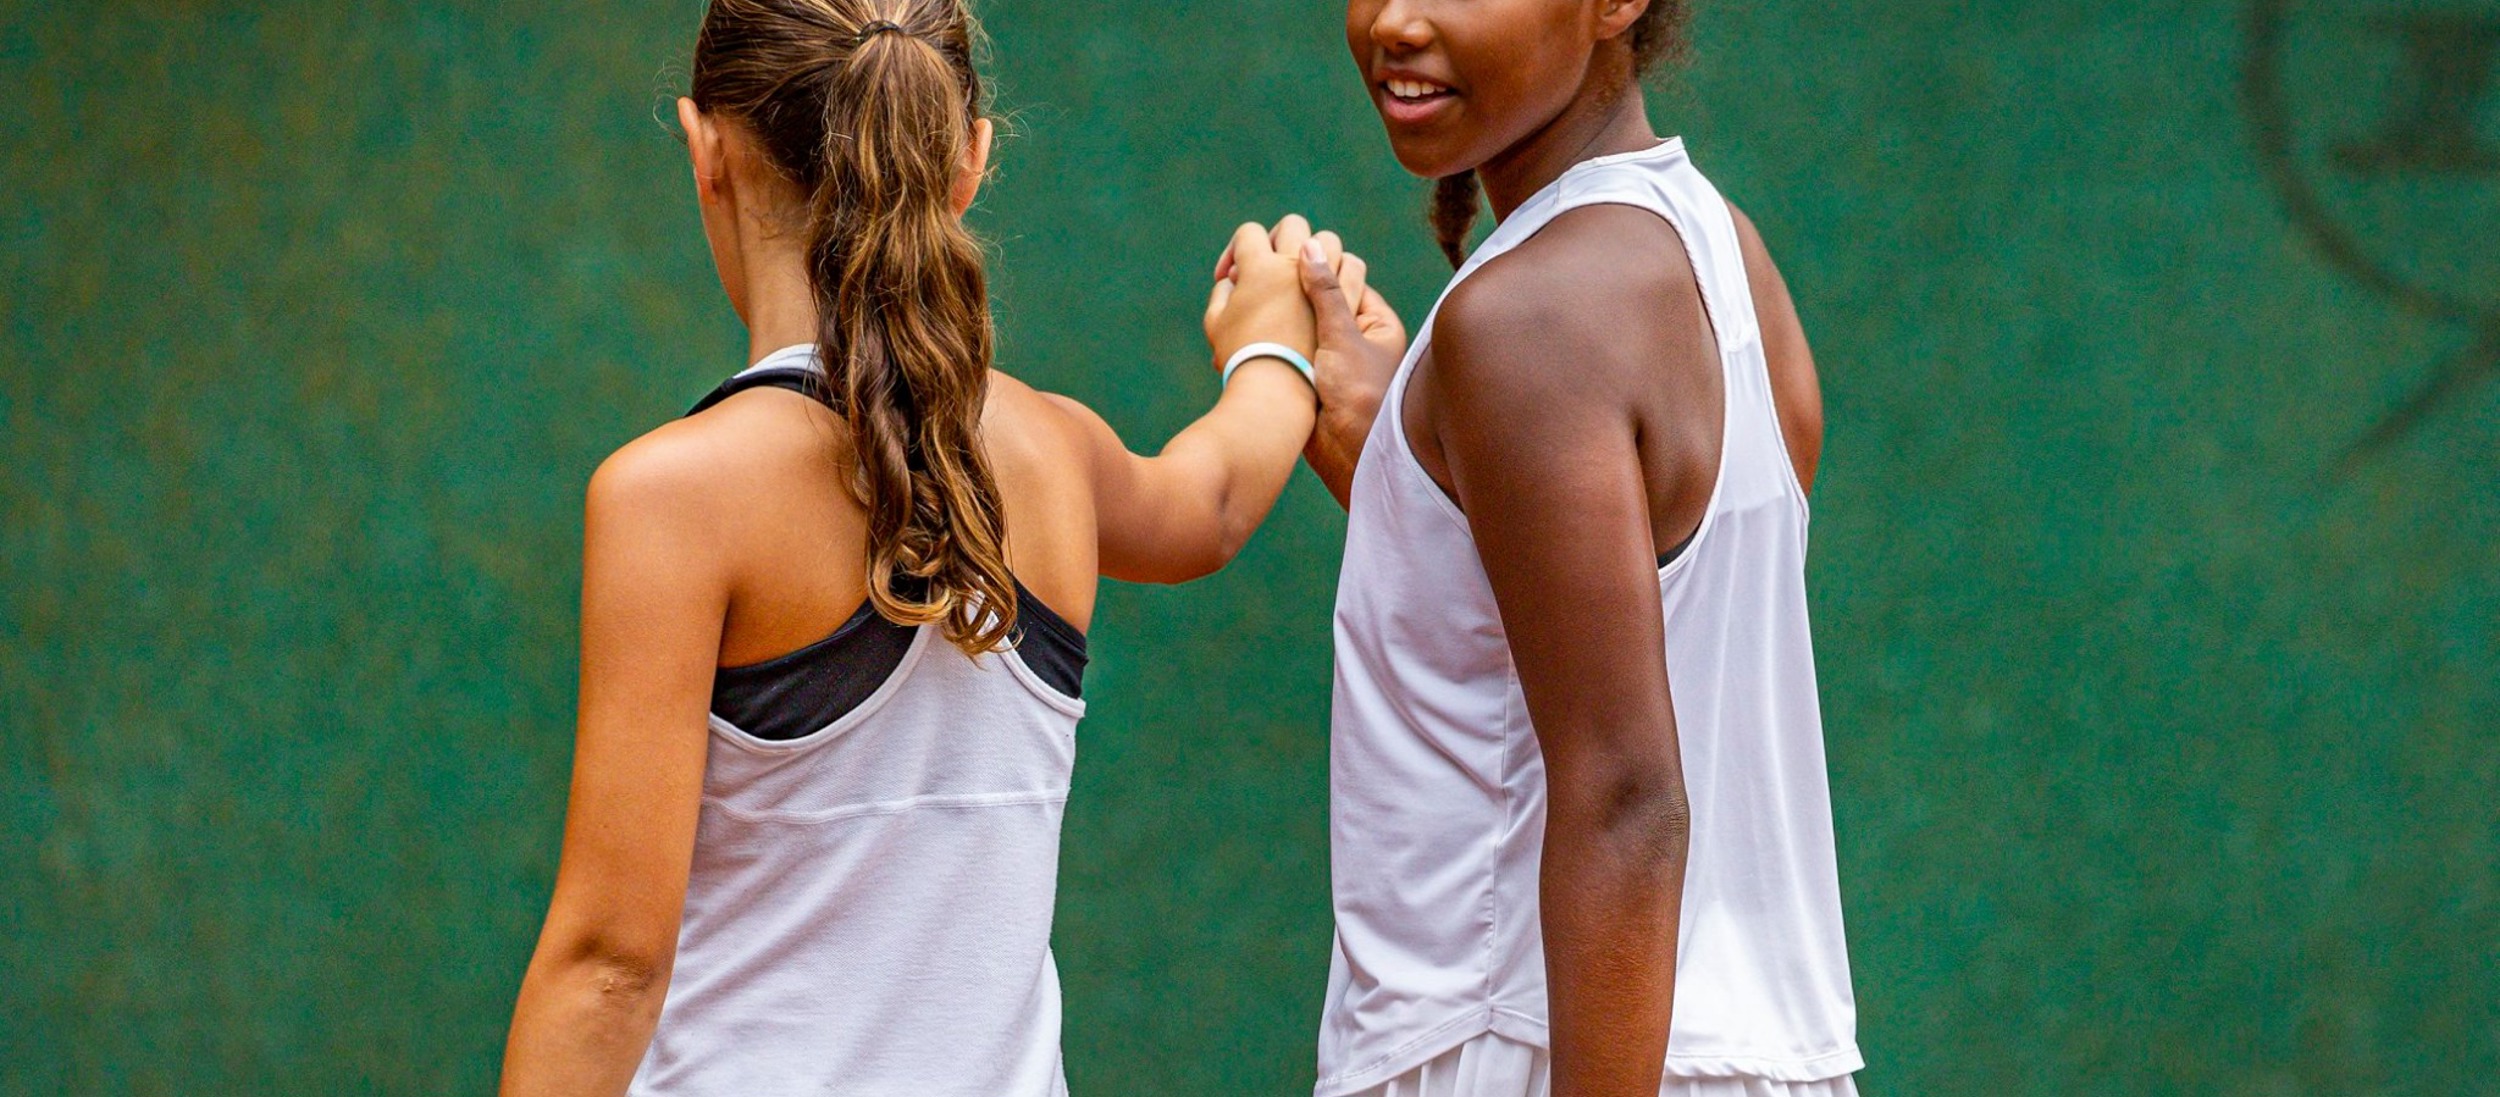 Junioren Tour fair play respect diversiteit tennis is voor iederen